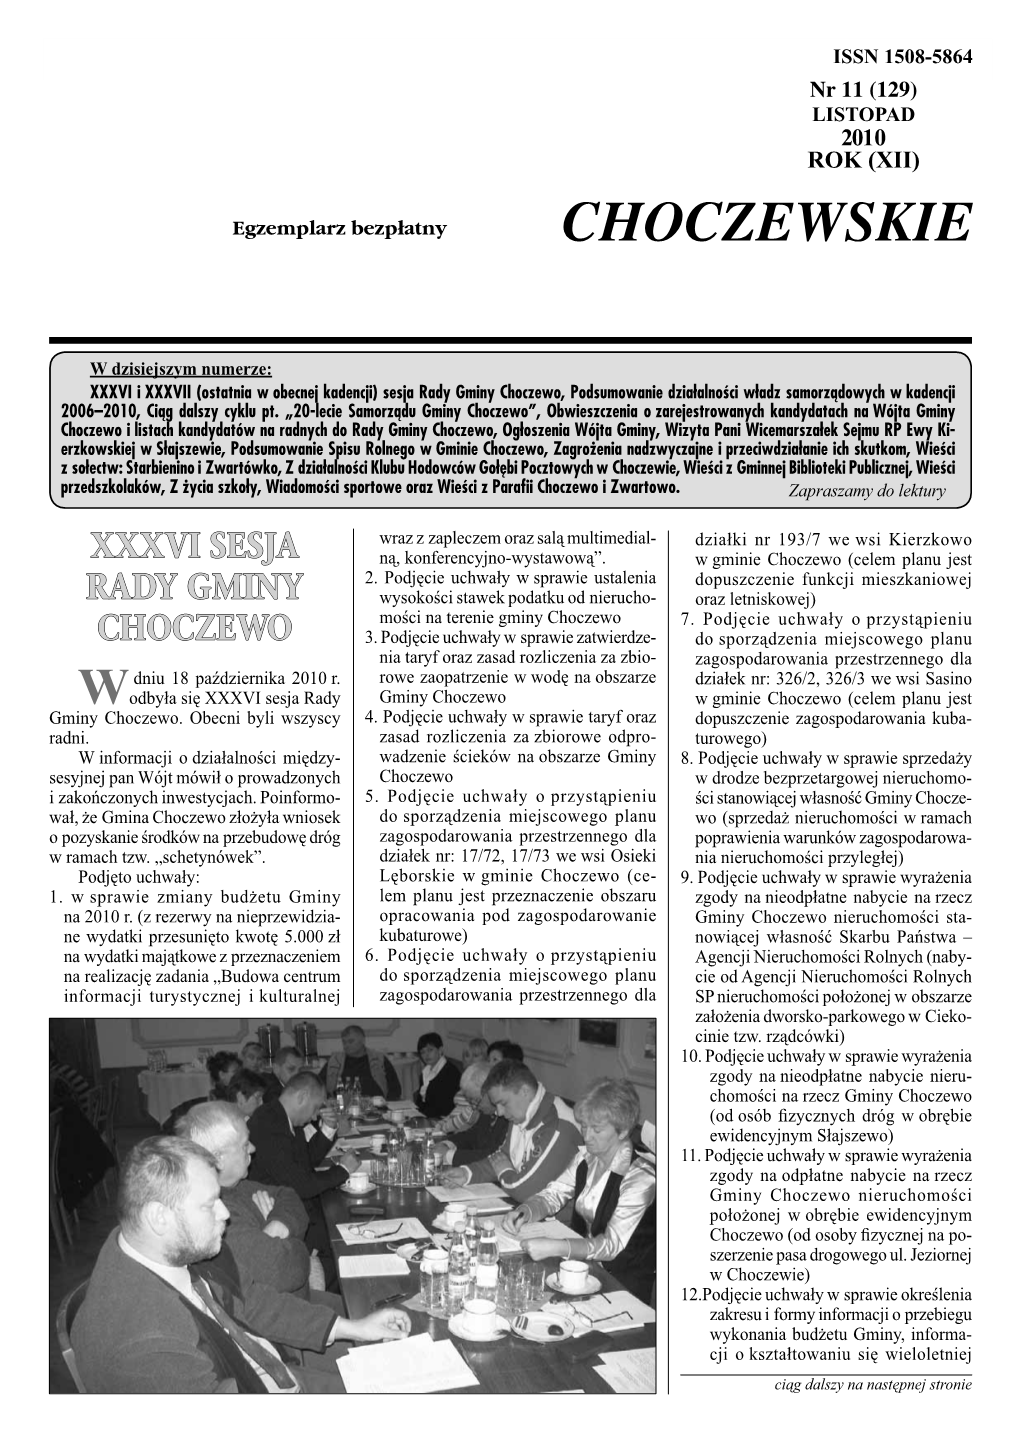 Wieści Choczewskie Nr 11 (129) LISTOPAD 2010 ISSN 1508-5864S